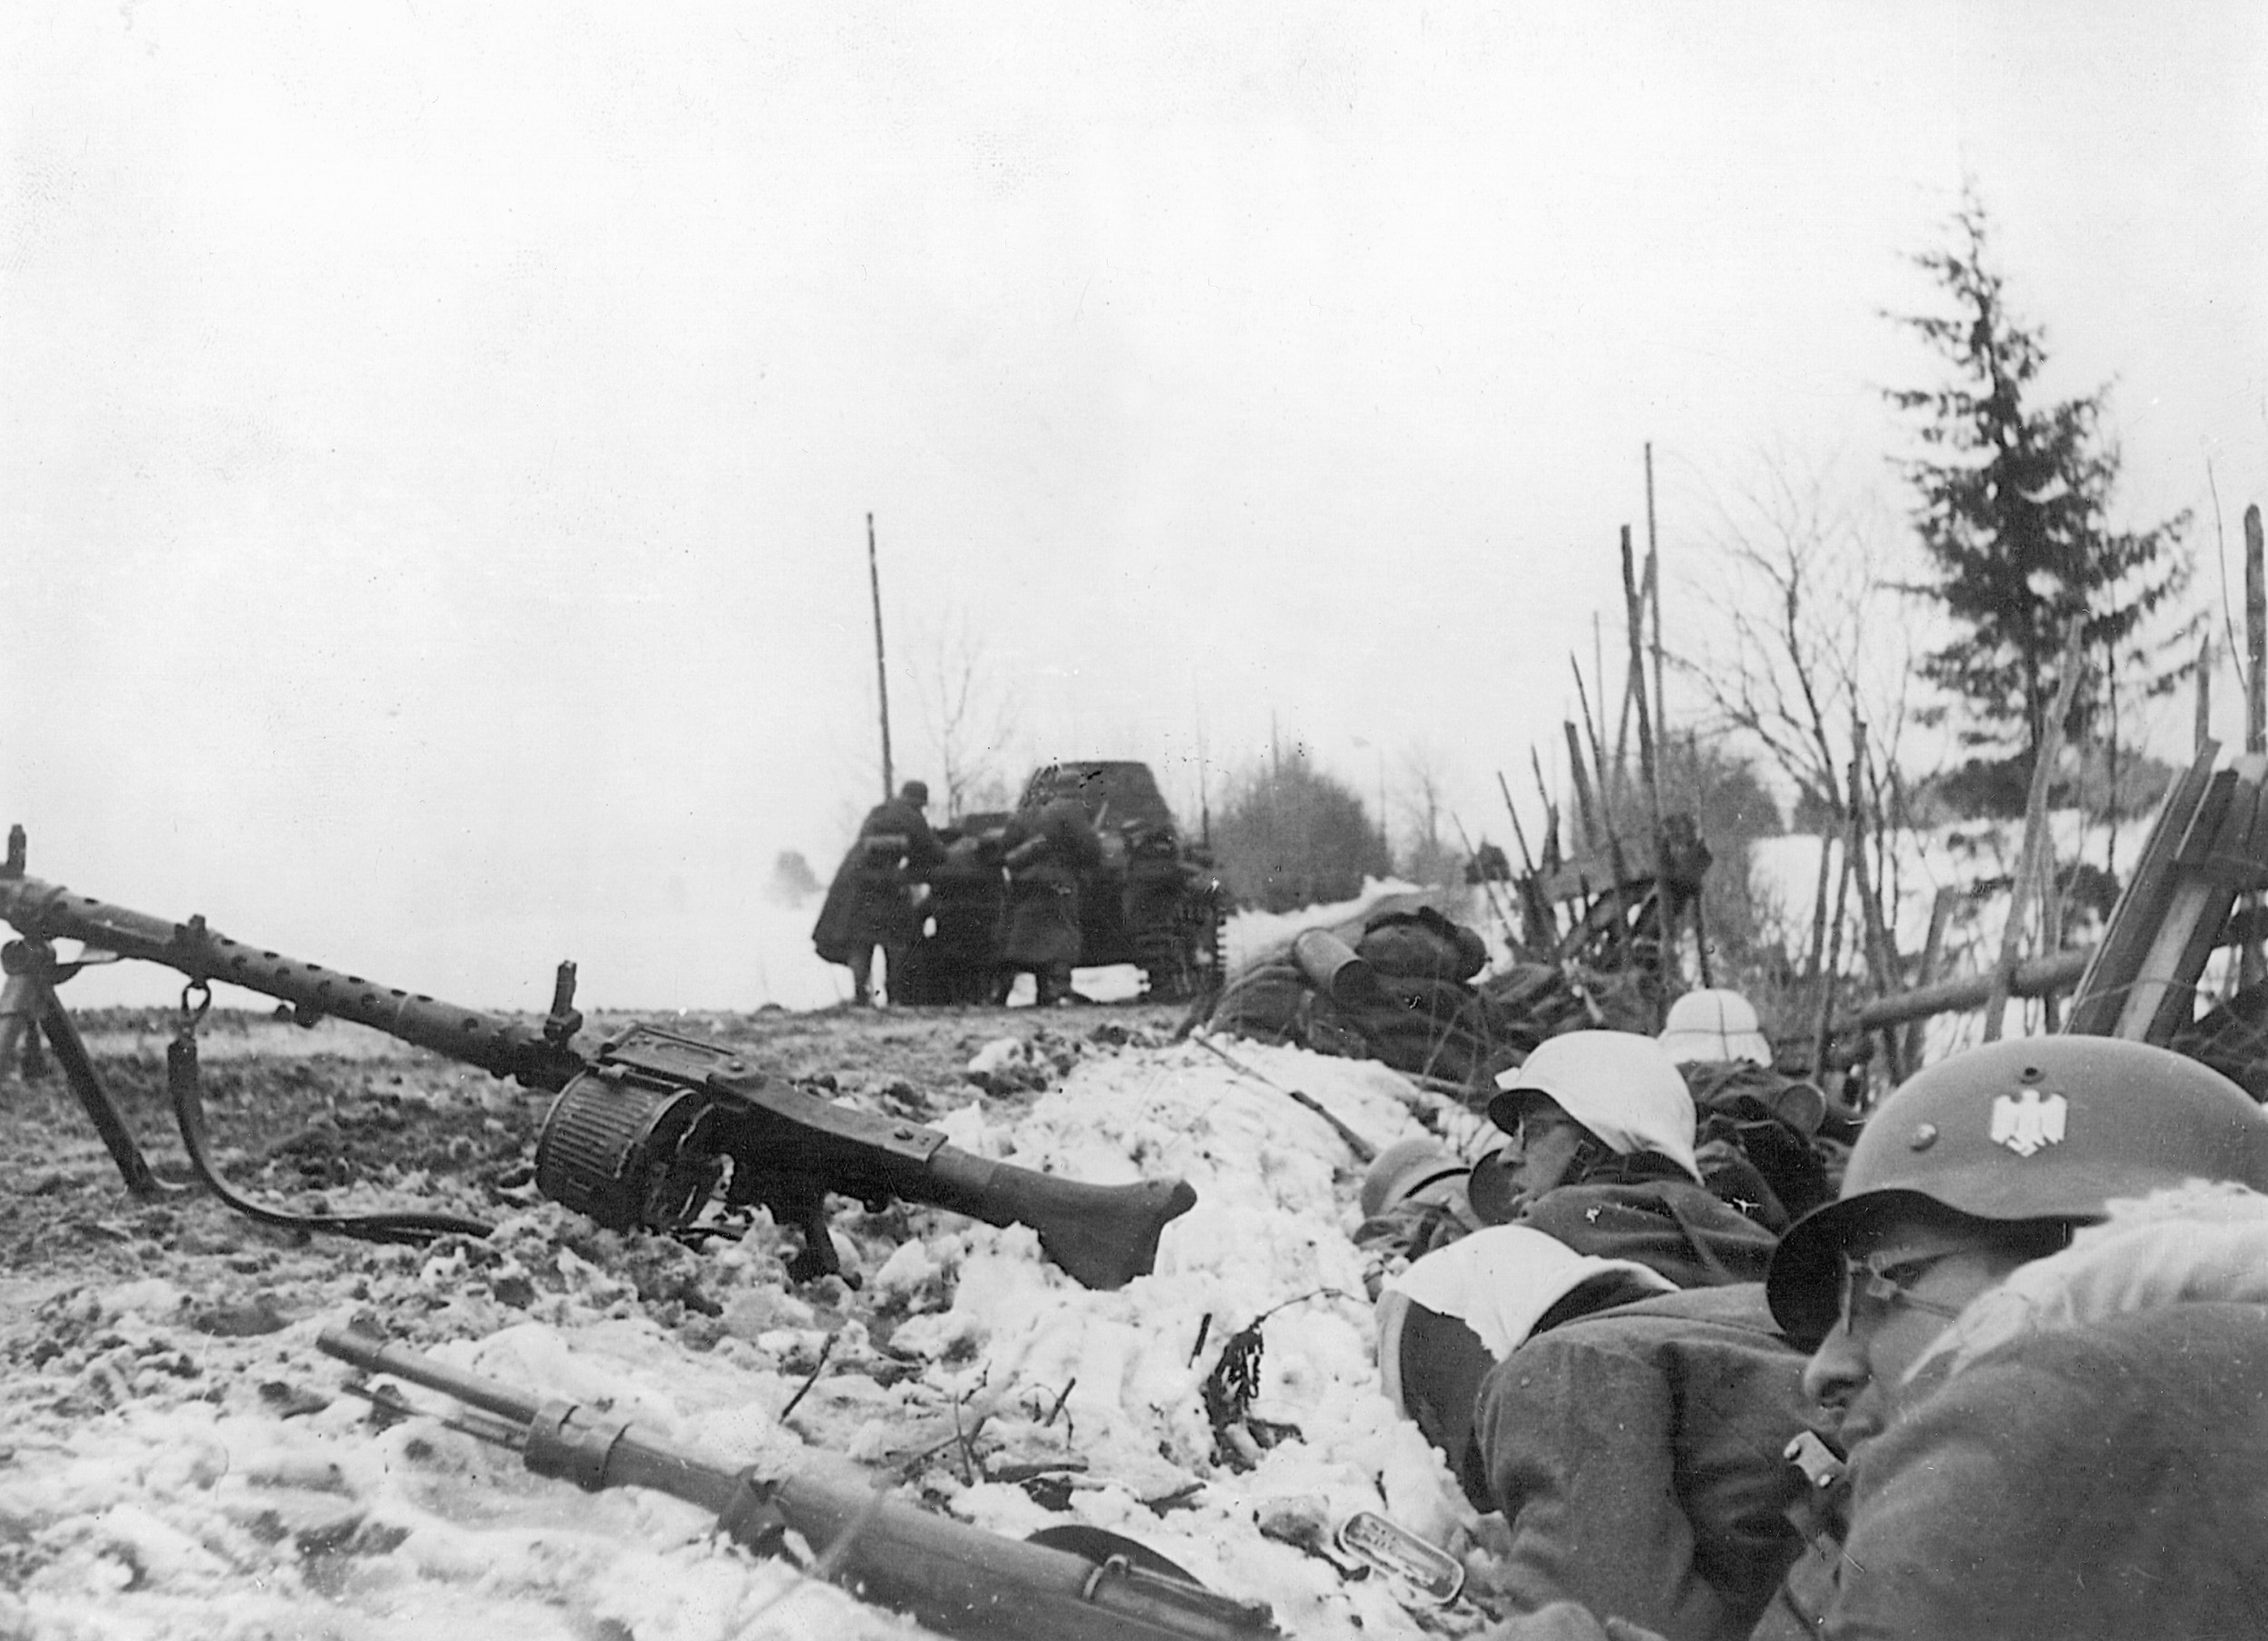 German troops lie in wait in the Norway snow.